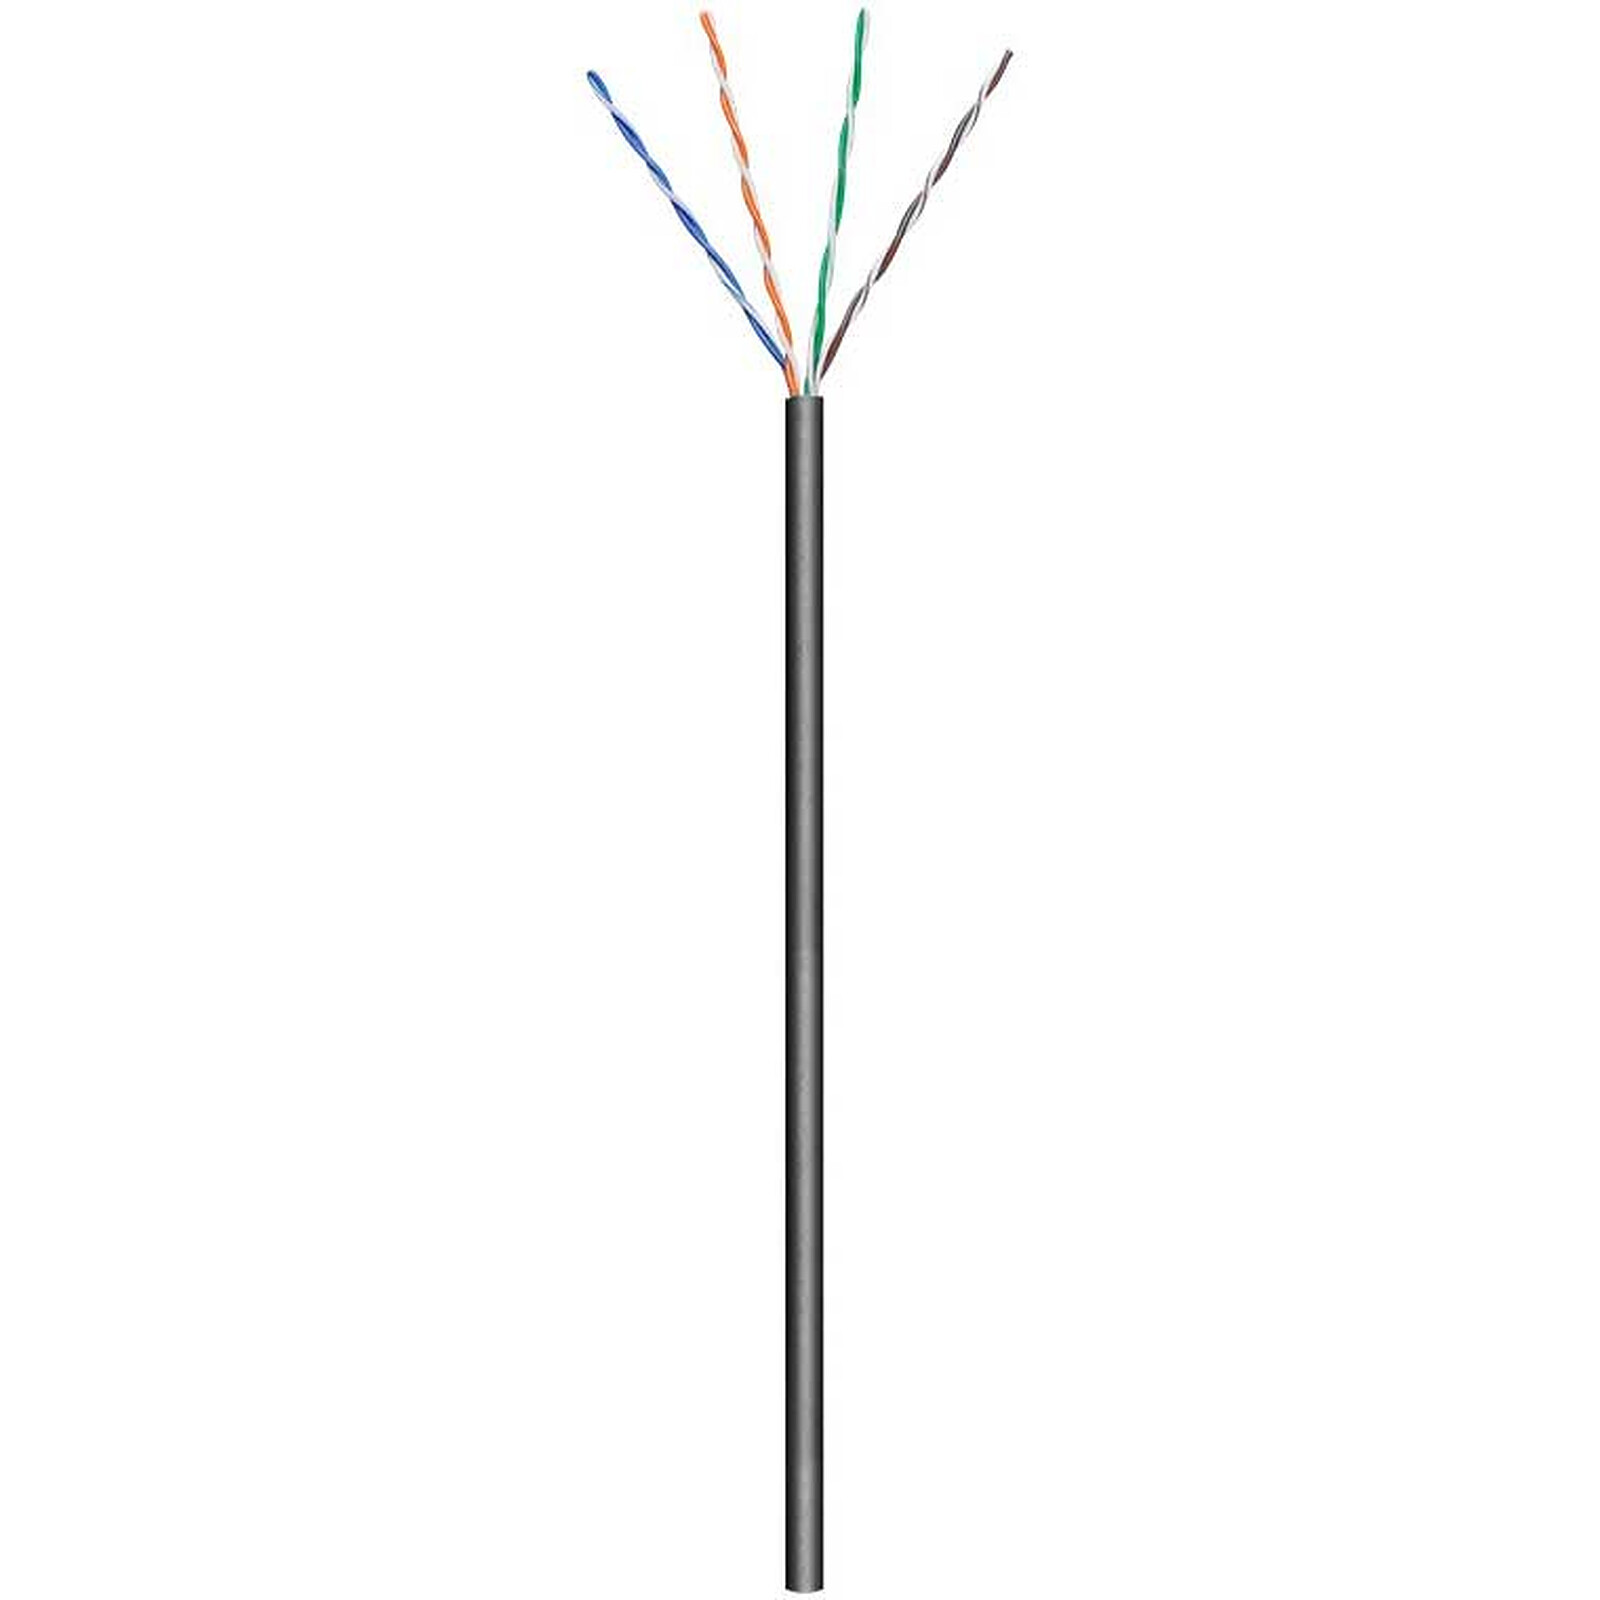 Câble RJ45 catégorie 6 F/UTP 3 m (Beige) - Câble RJ45 - Garantie 3 ans LDLC